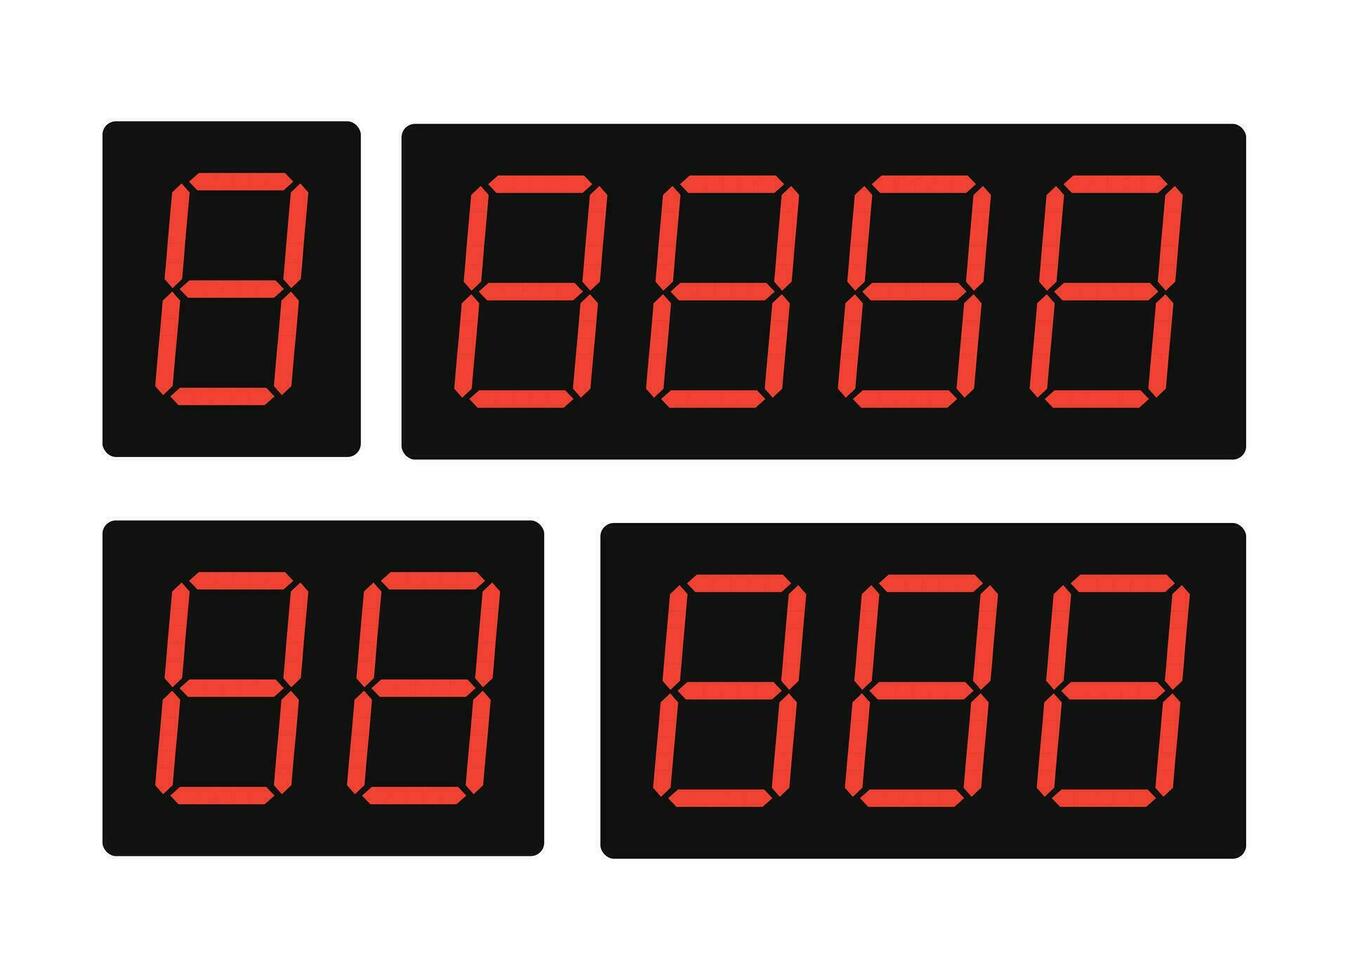 ensemble de rouge numérique Nombres. numérique alarme l'horloge ou minuteries. vecteur illustration.